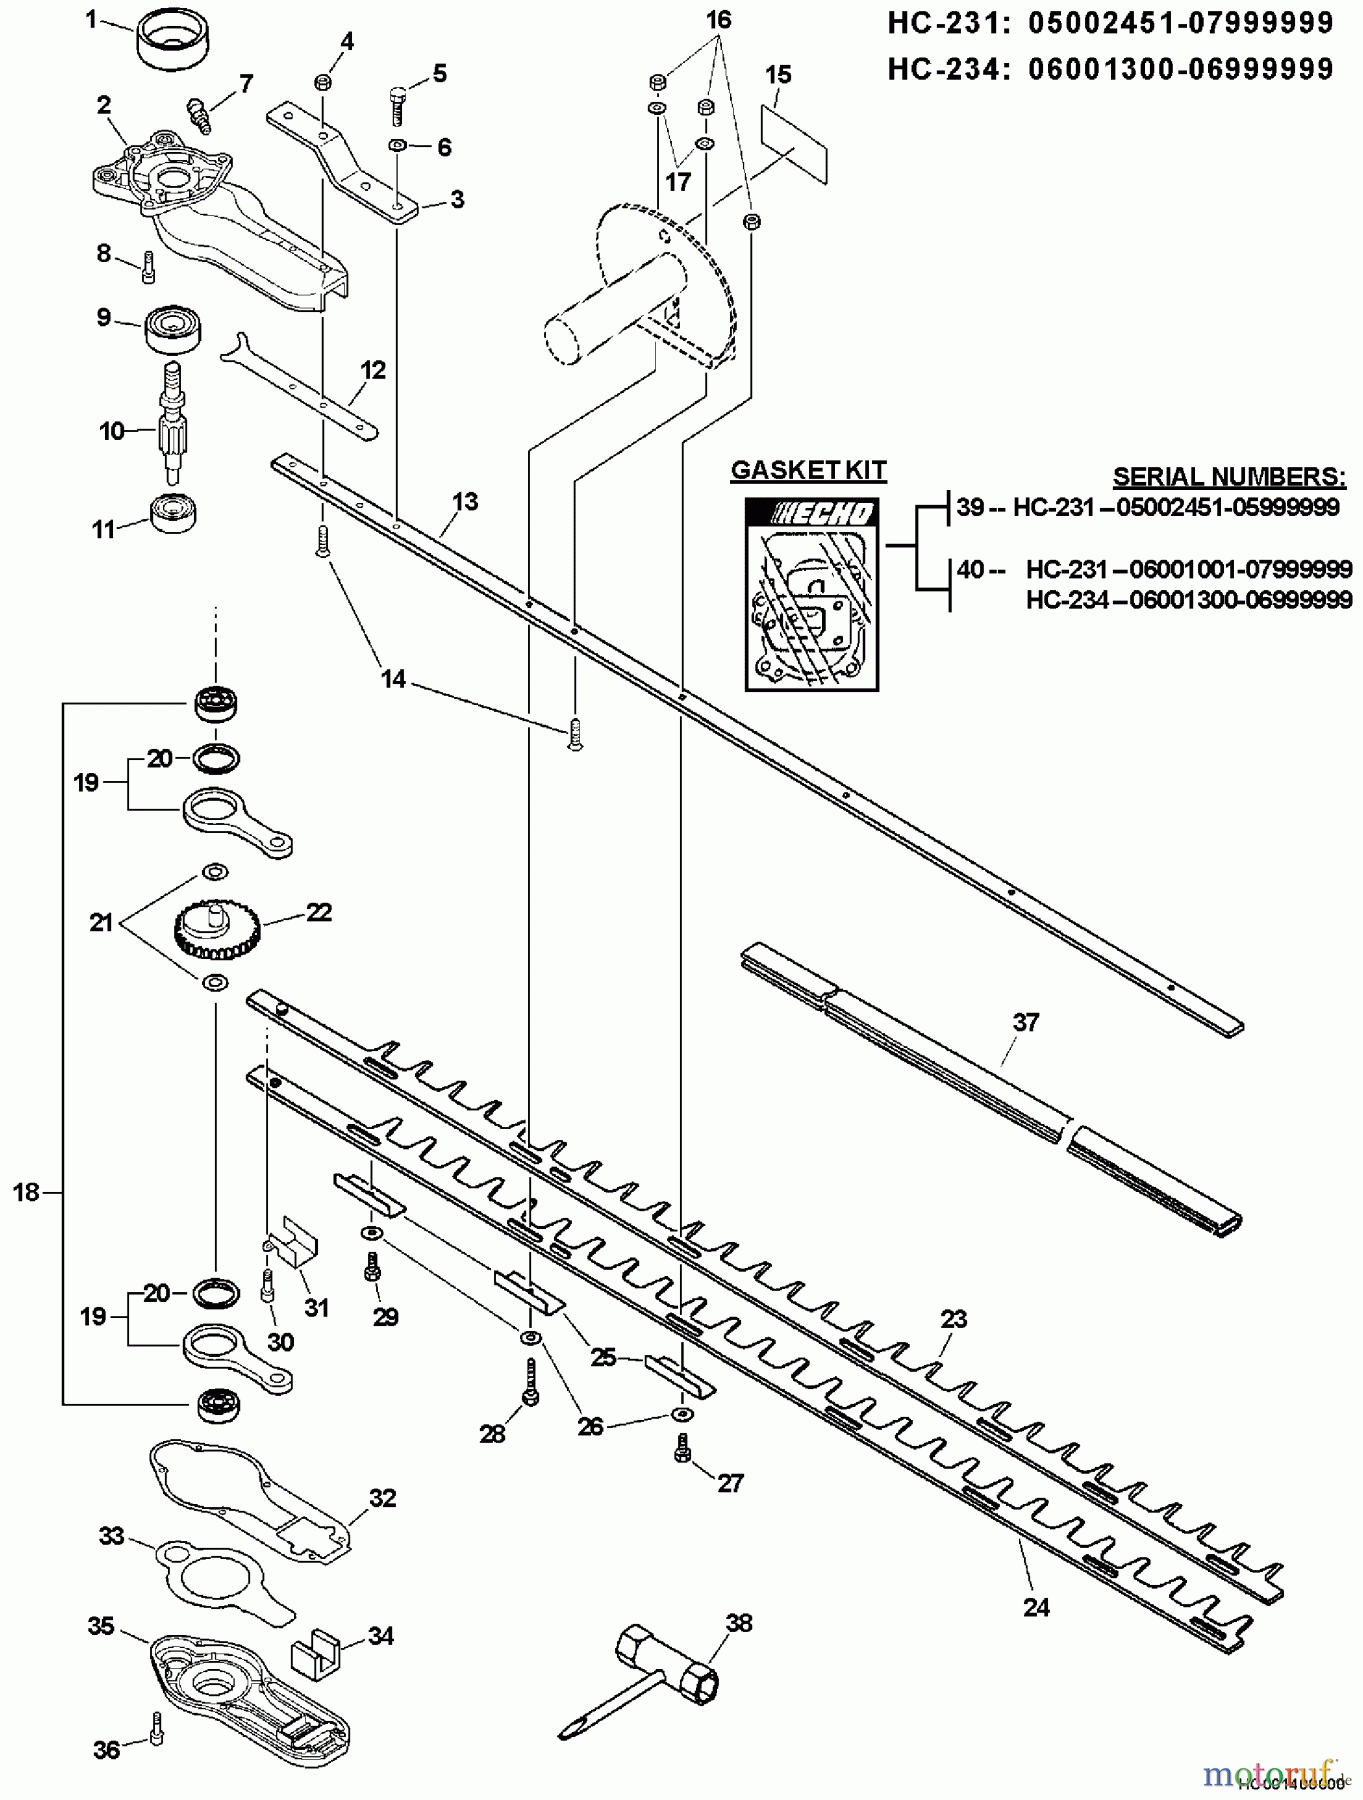  Echo Heckenscheren HC-234 - Echo Hedge Trimmer, S/N: 06001001 - 06999999 Blades, Gear Case, Tools  S/N: 06001300 - 06999999